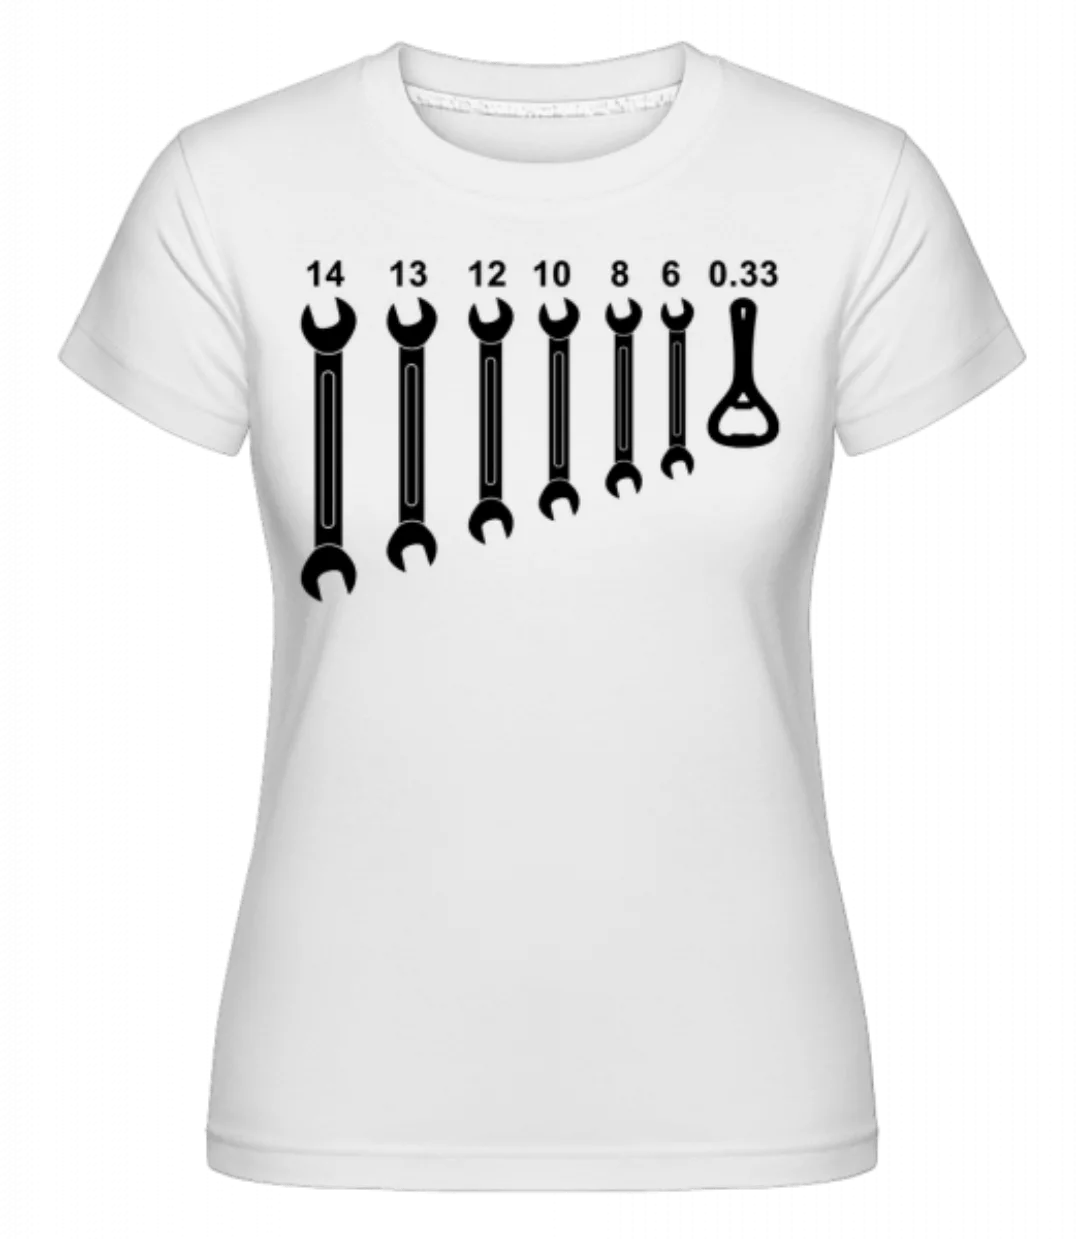 Werkzeug Bieröffner · Shirtinator Frauen T-Shirt günstig online kaufen